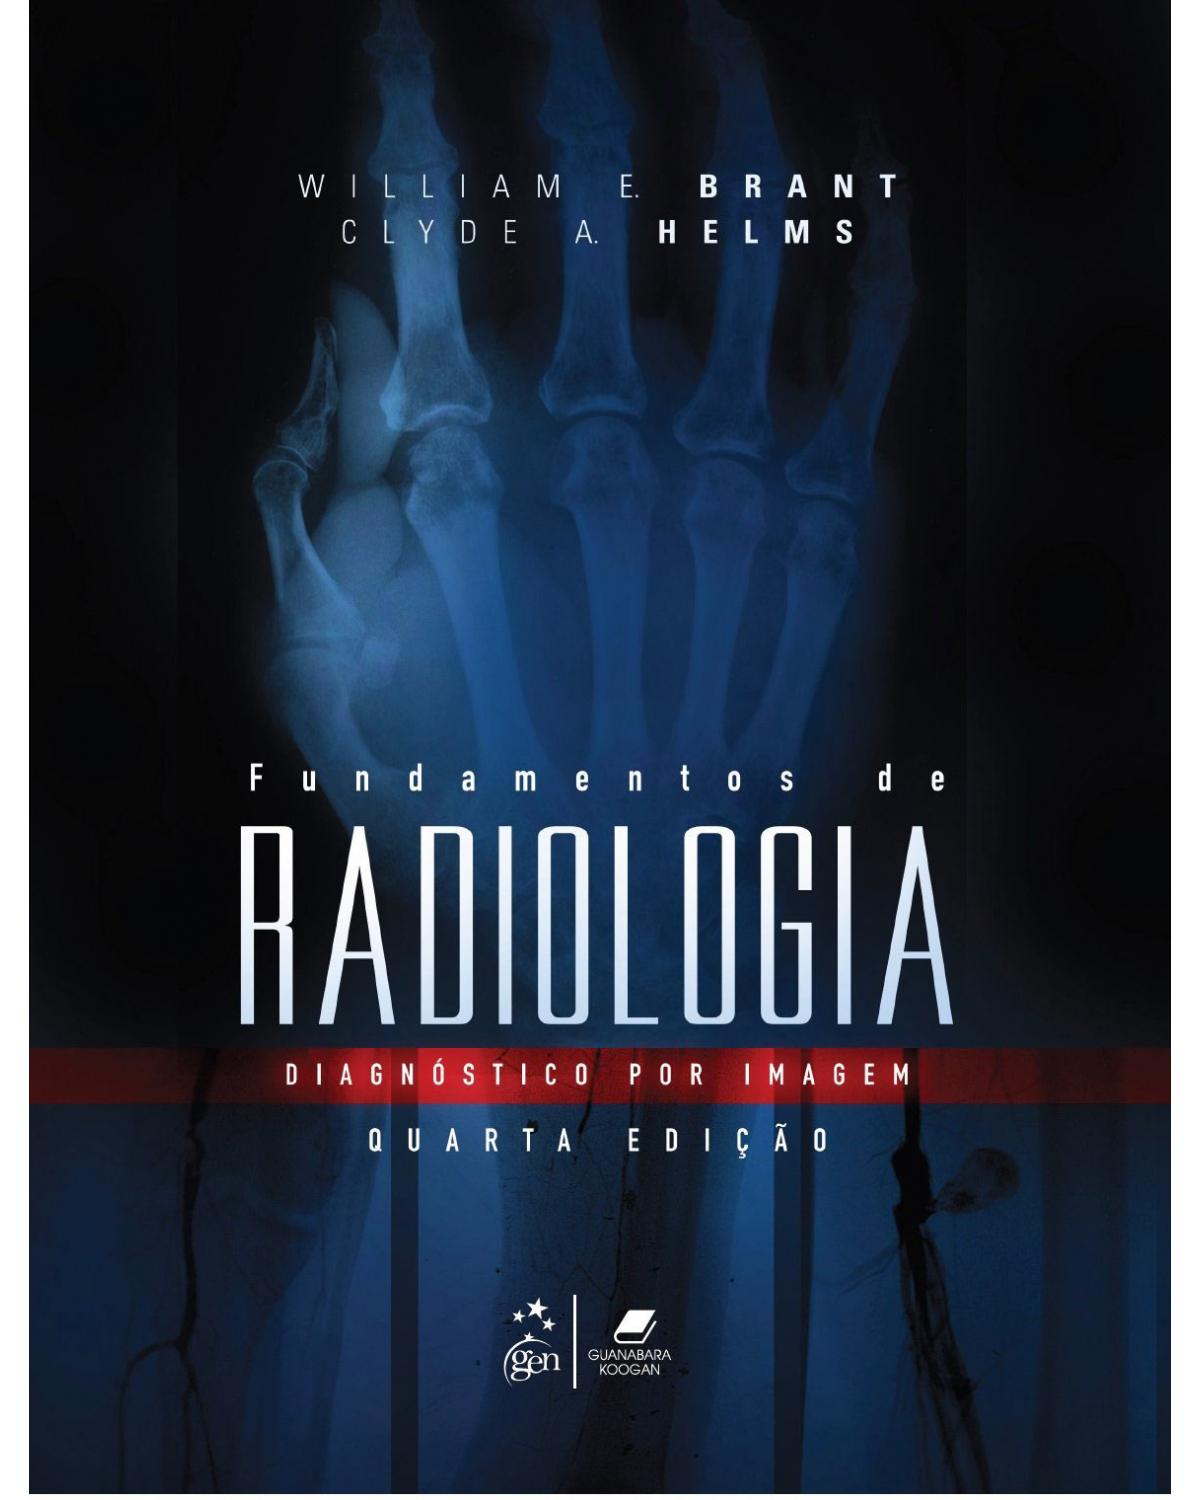 Fundamentos de radiologia - Diagnóstico por imagem - 4ª Edição | 2015